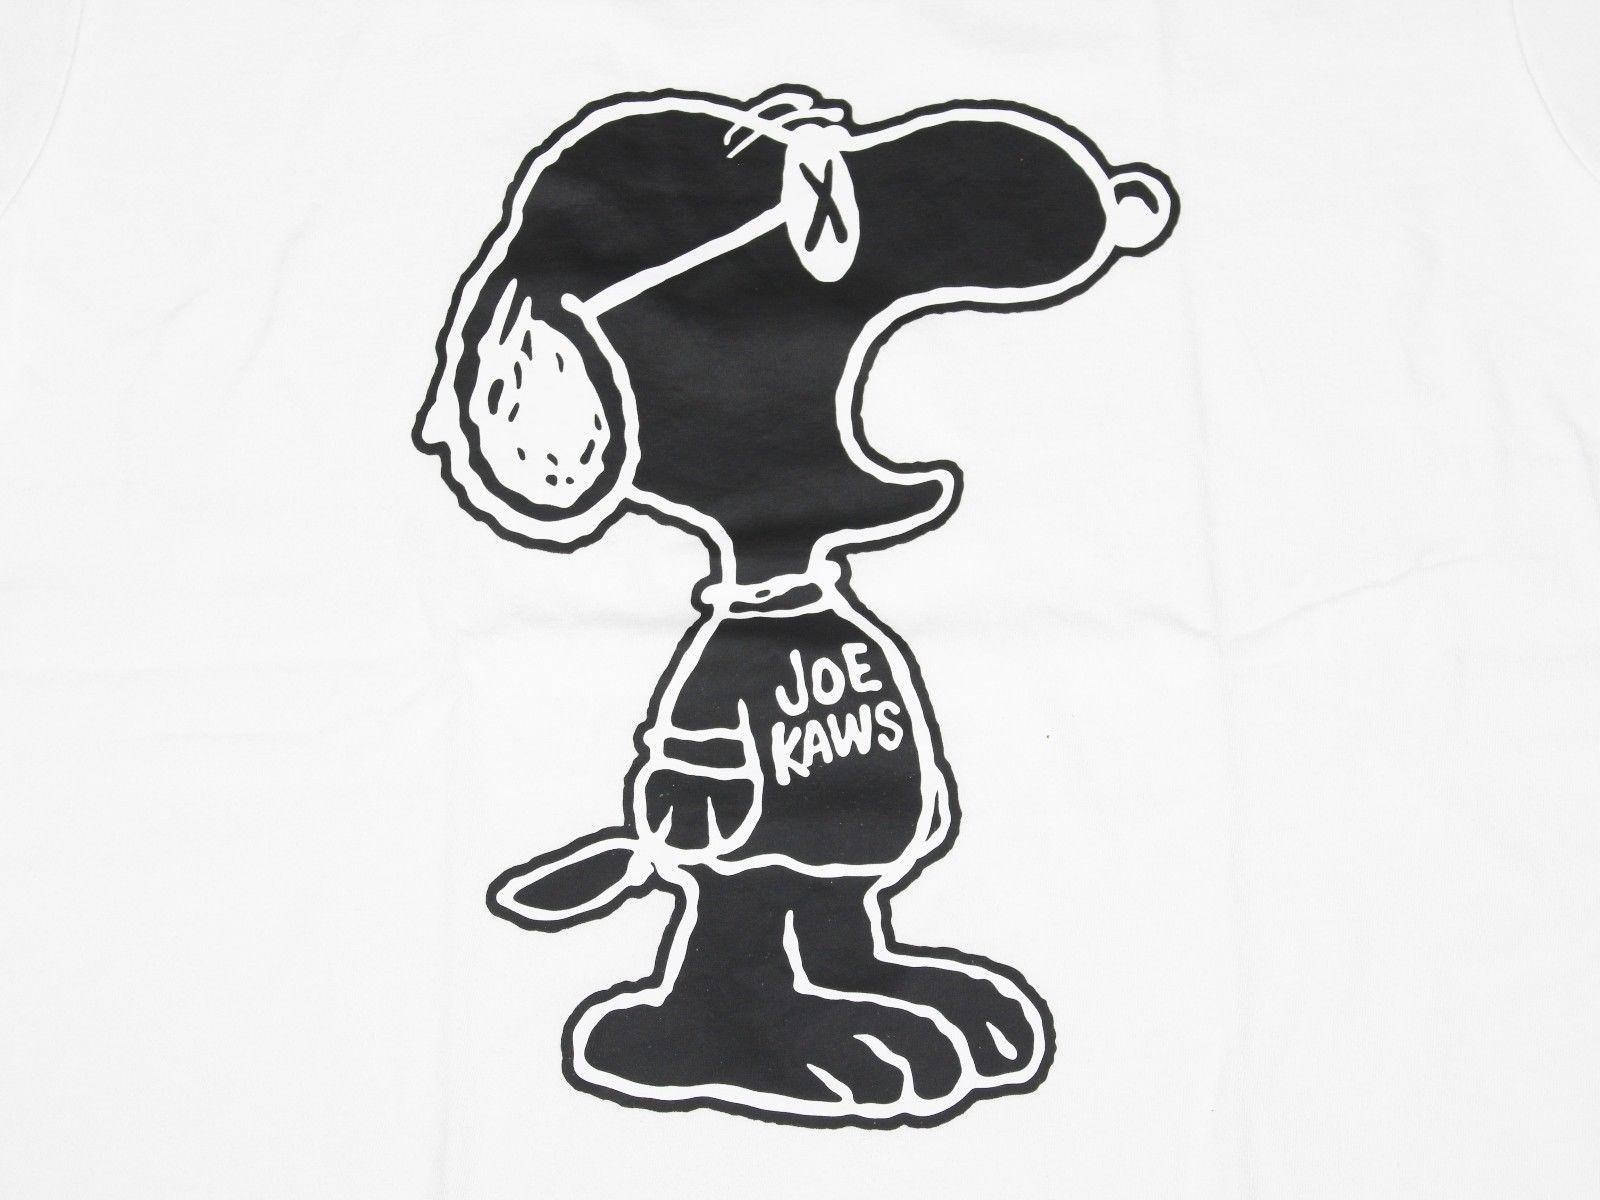 Uniqlo Snoopy Collaboration Illustration